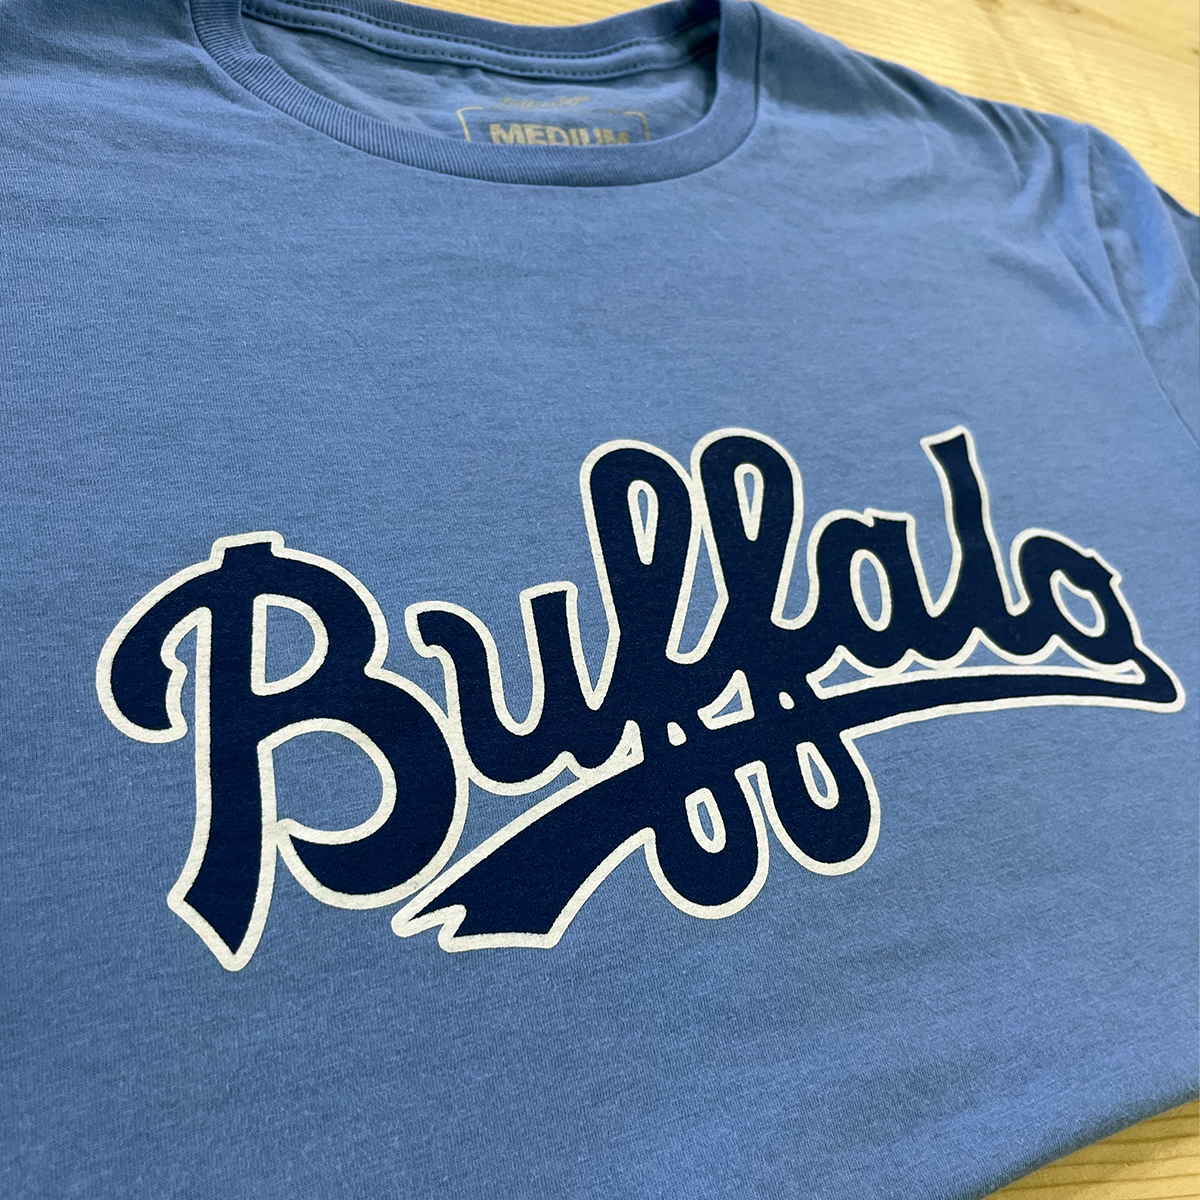 buffalo baseball shirt